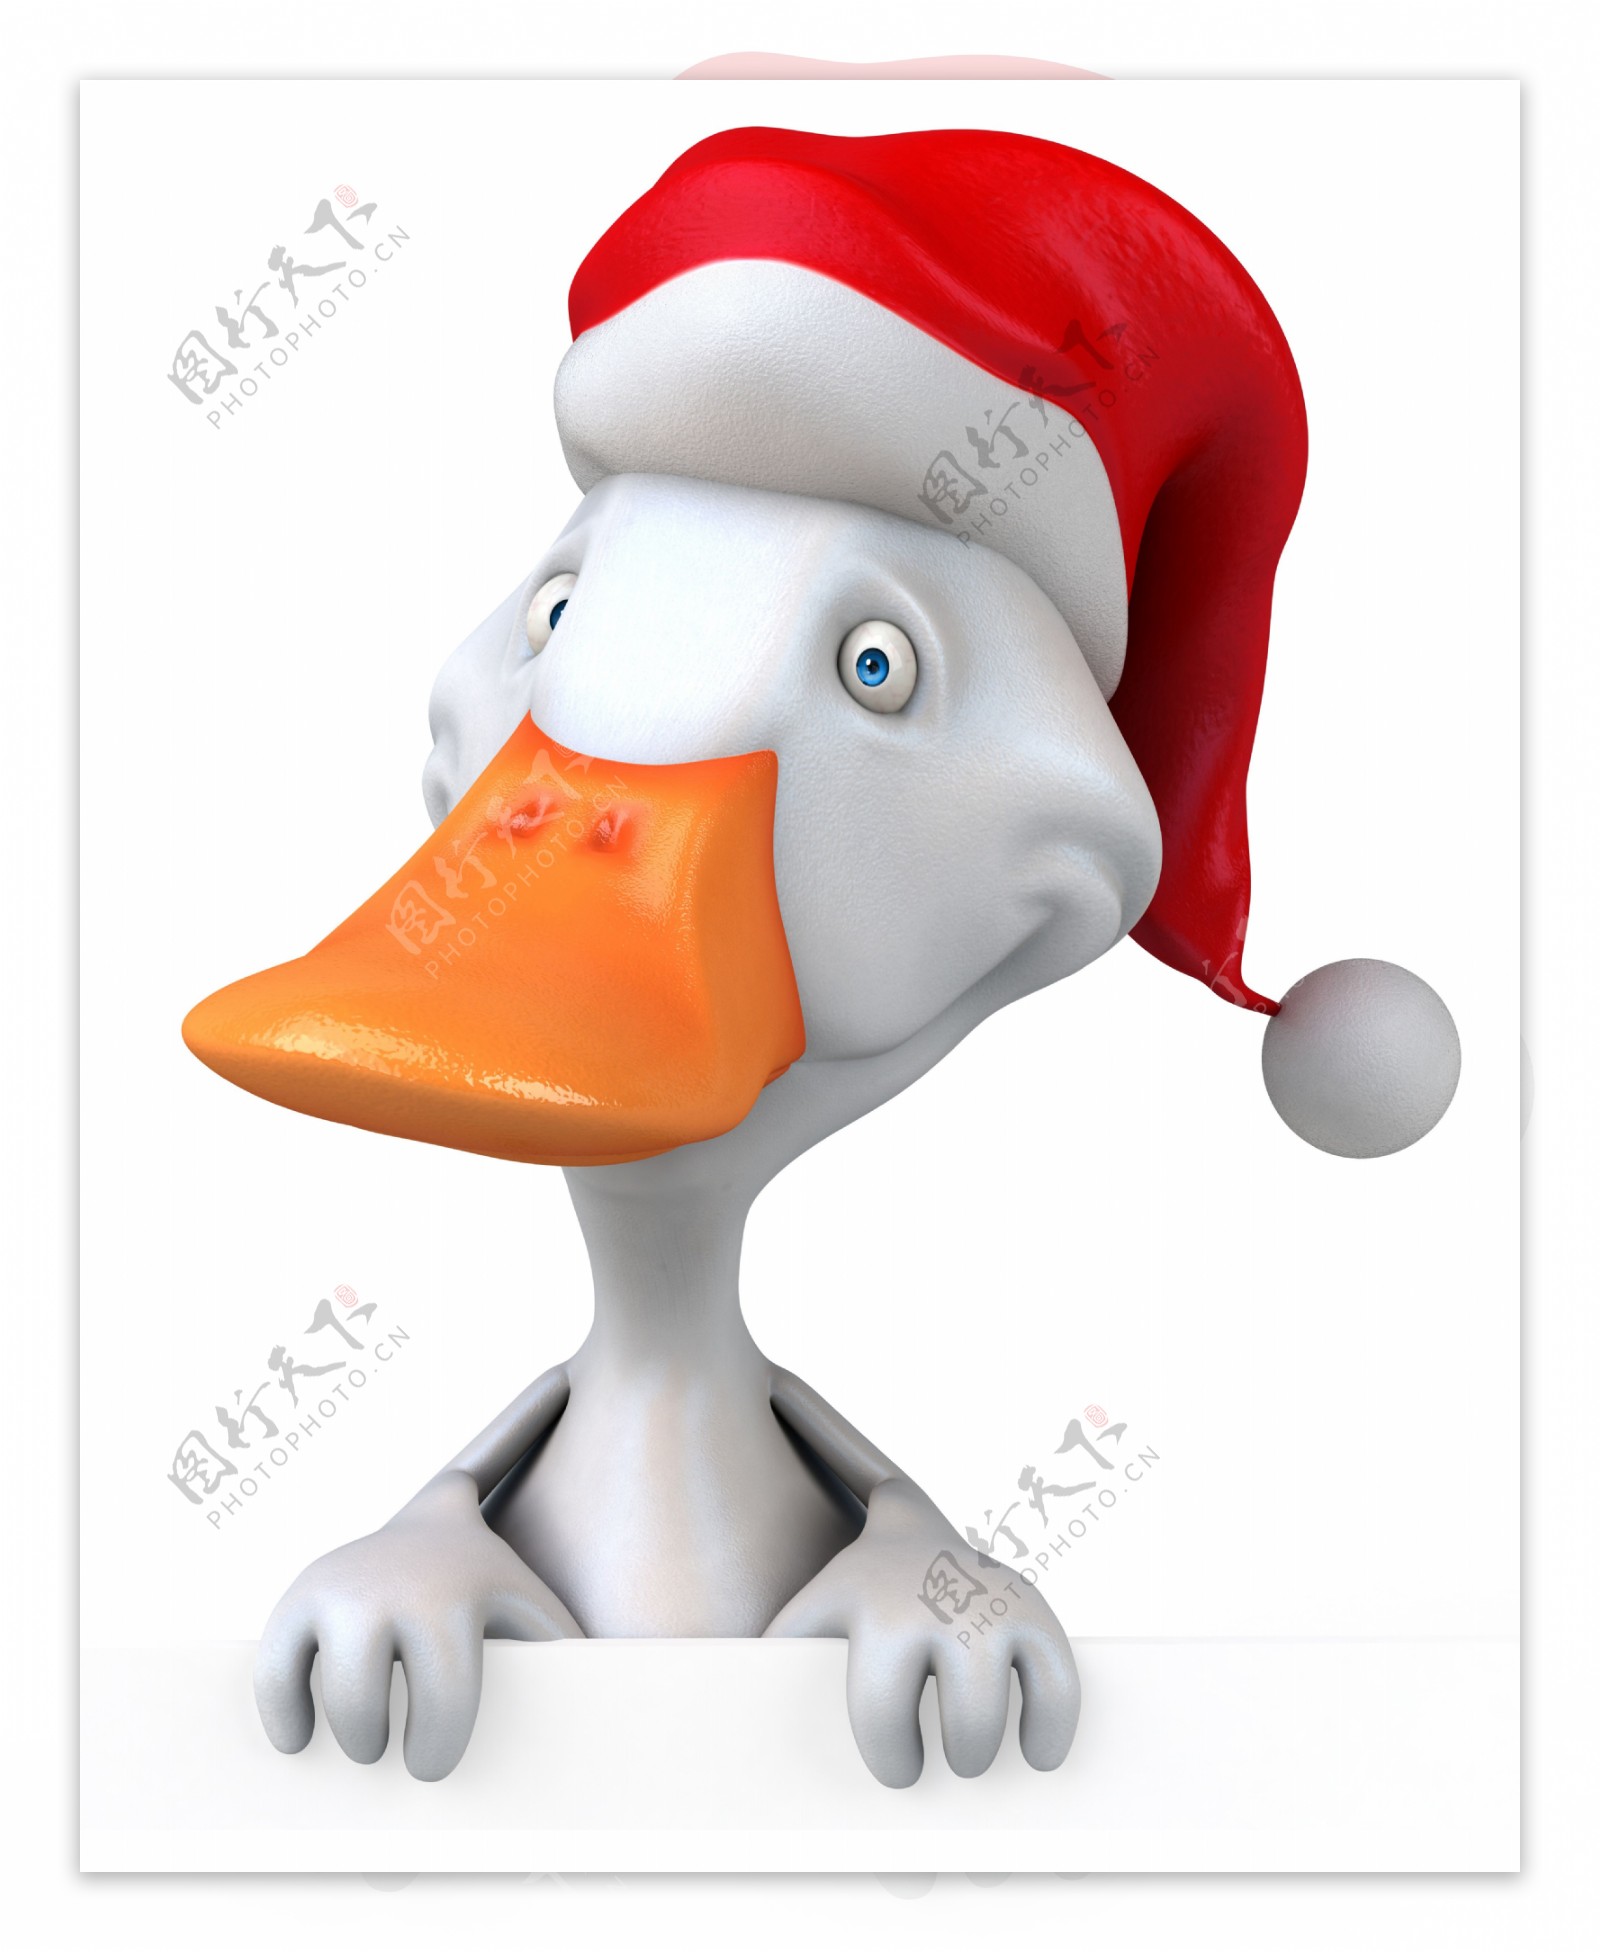 戴着圣诞帽的鸭子图片